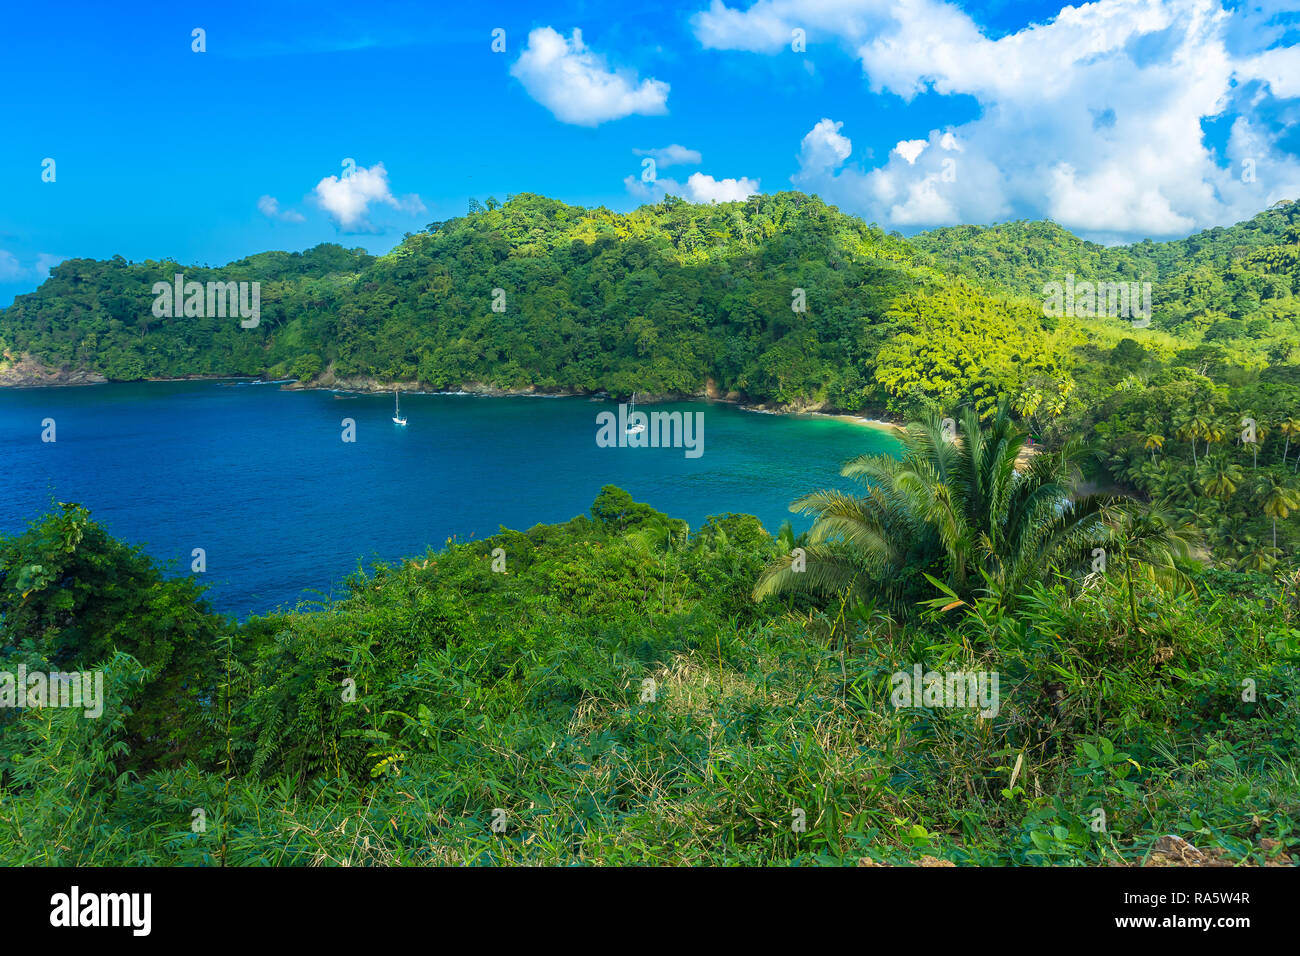 Englishman's Bay sur l'île tropicale de Tobago dans les Caraïbes, Antilles. Ciel bleu profond et l'océan dans cette baie isolée, Paysage Banque D'Images